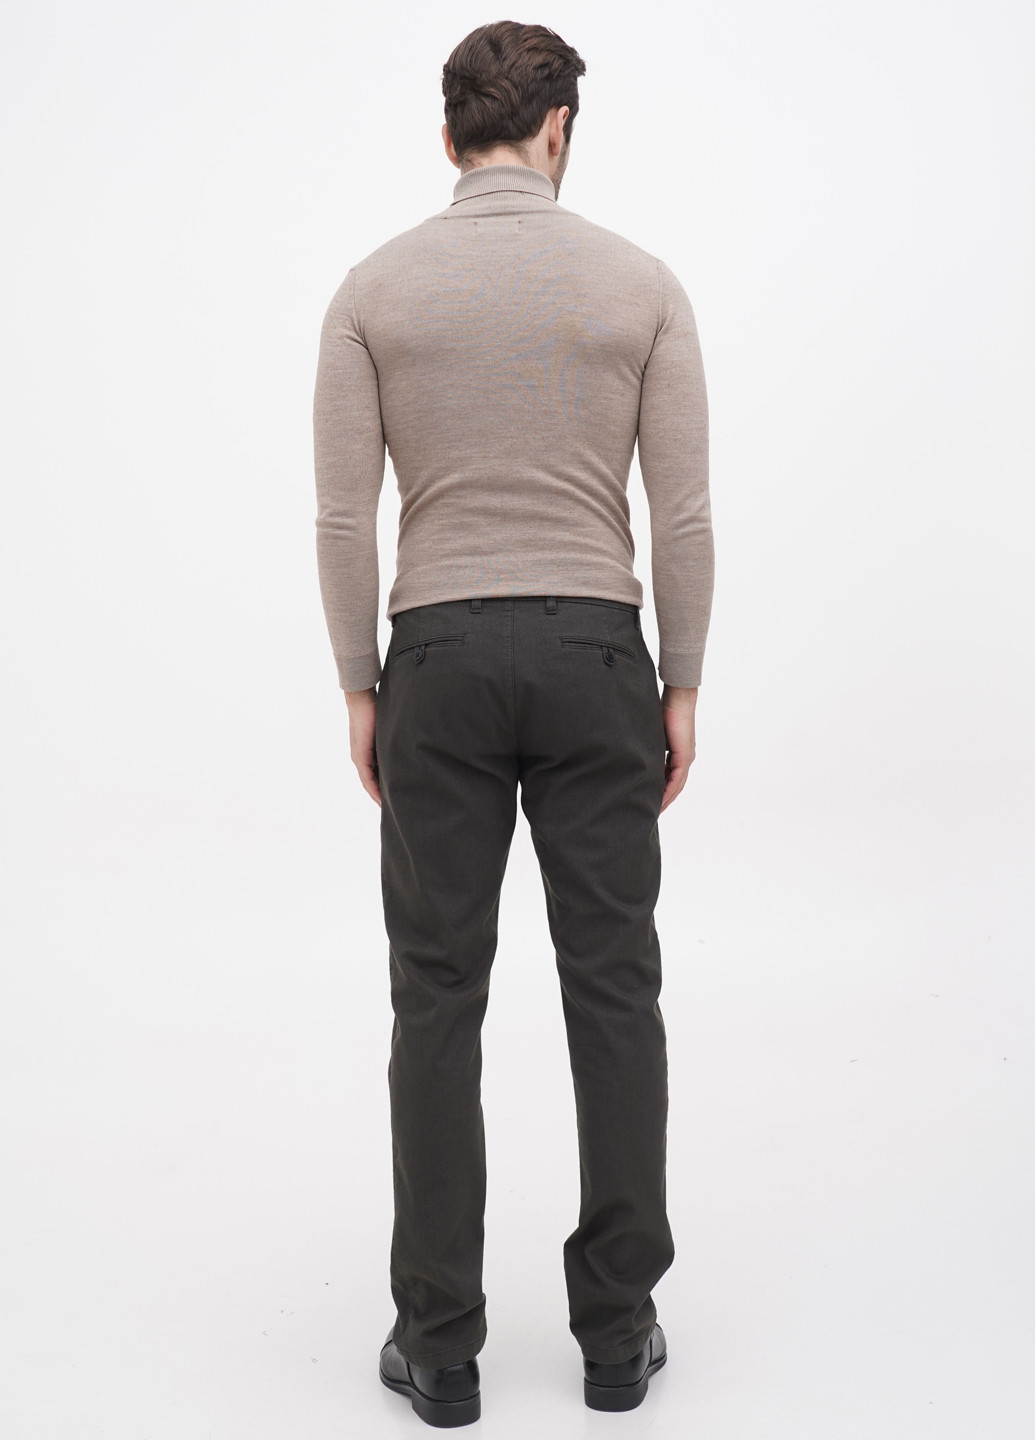 Темно-коричневые кэжуал демисезонные зауженные брюки Lagrand